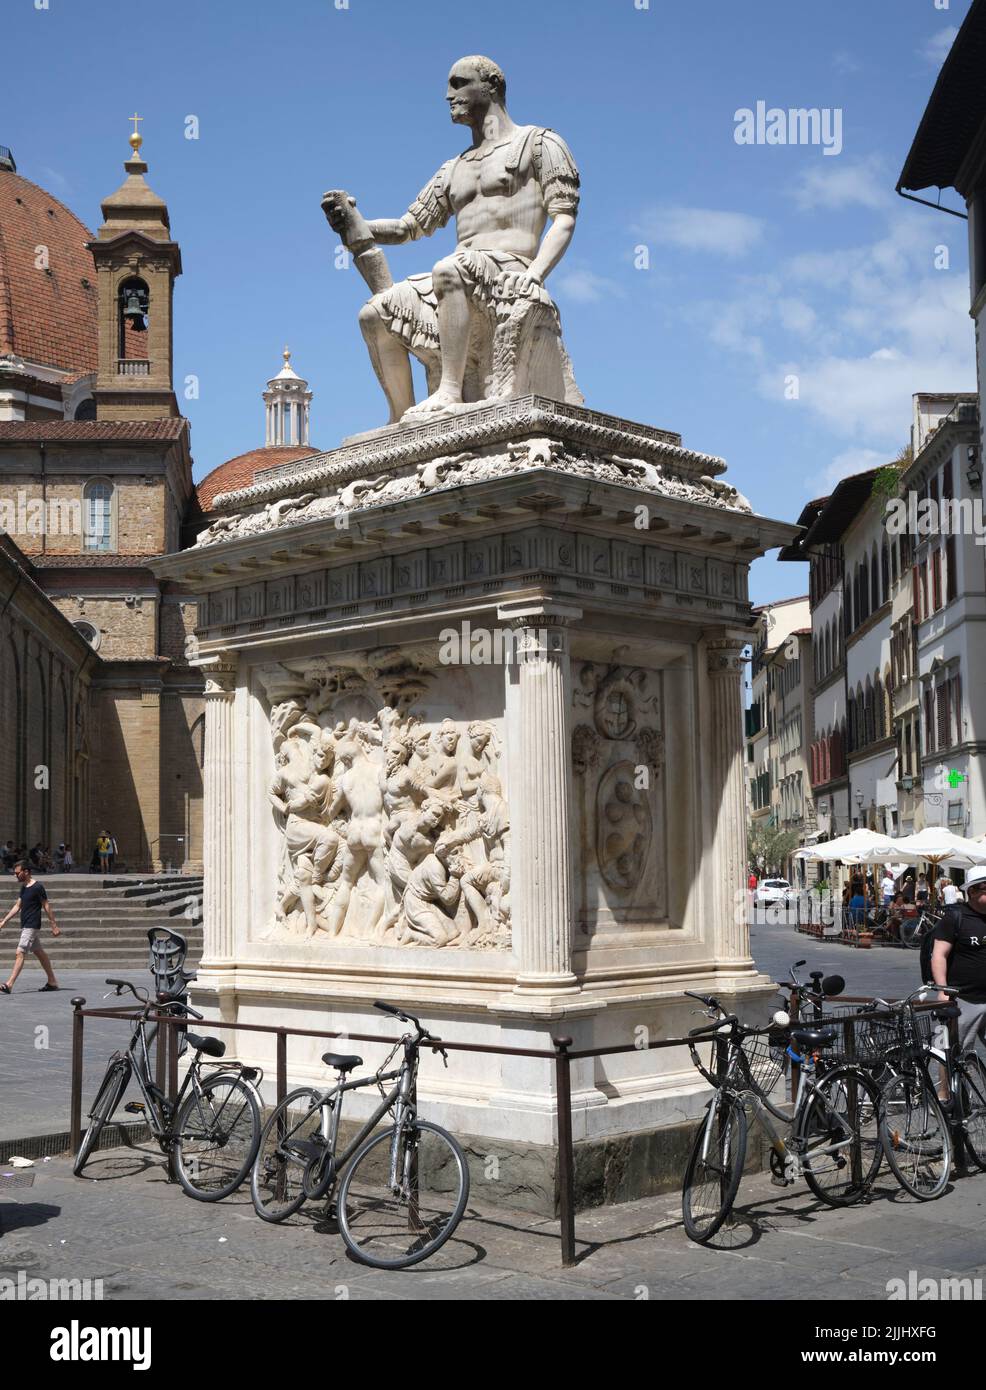 Statua di Giovanni delle bande nere (Lodovico de' Medici) di Baccio Bandinelli in Piazza San Lorenzo Firenze Italia Foto Stock